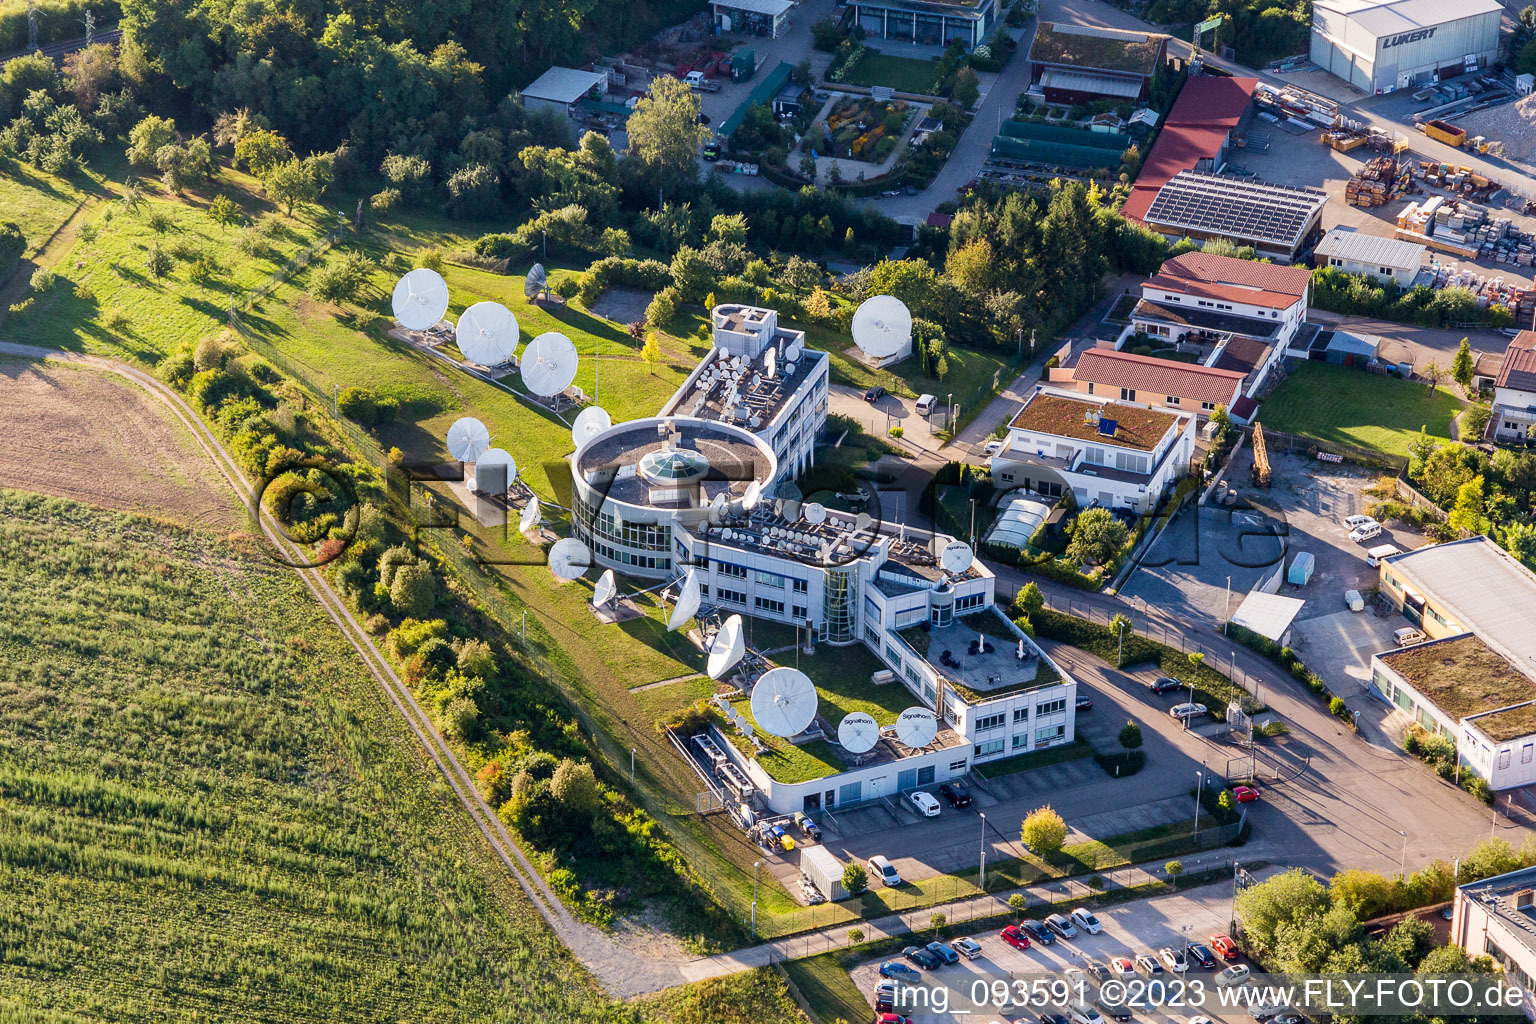 Luftbild von Parabolspiegel von Satellitenschüsseln der Firma Signalhorn in Waldrems in Backnang im Bundesland Baden-Württemberg, Deutschland